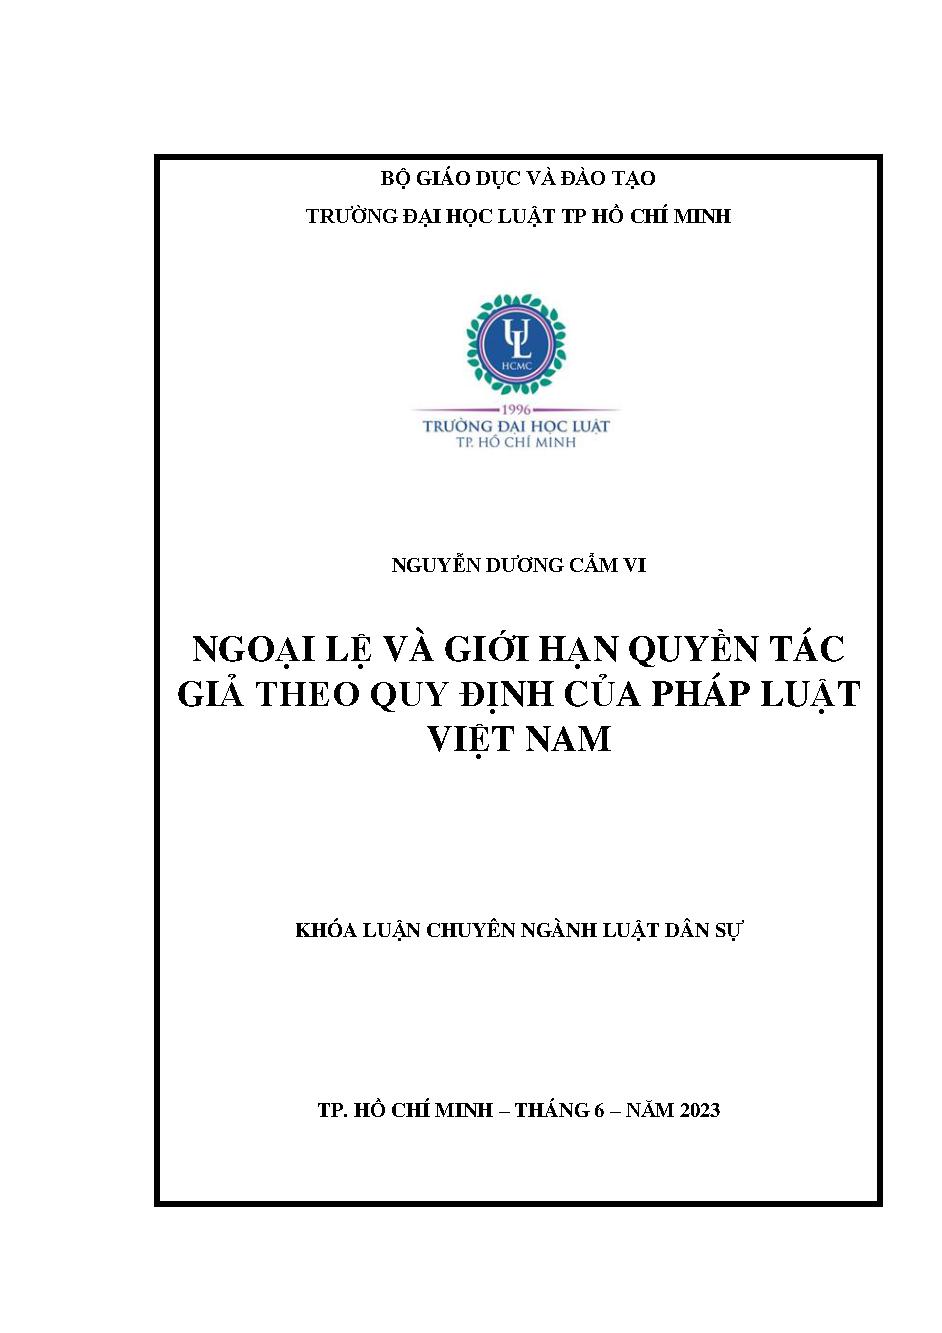 Ngoại lệ và giới hạn quyền tác giả theo quy định của pháp luật Việt Nam